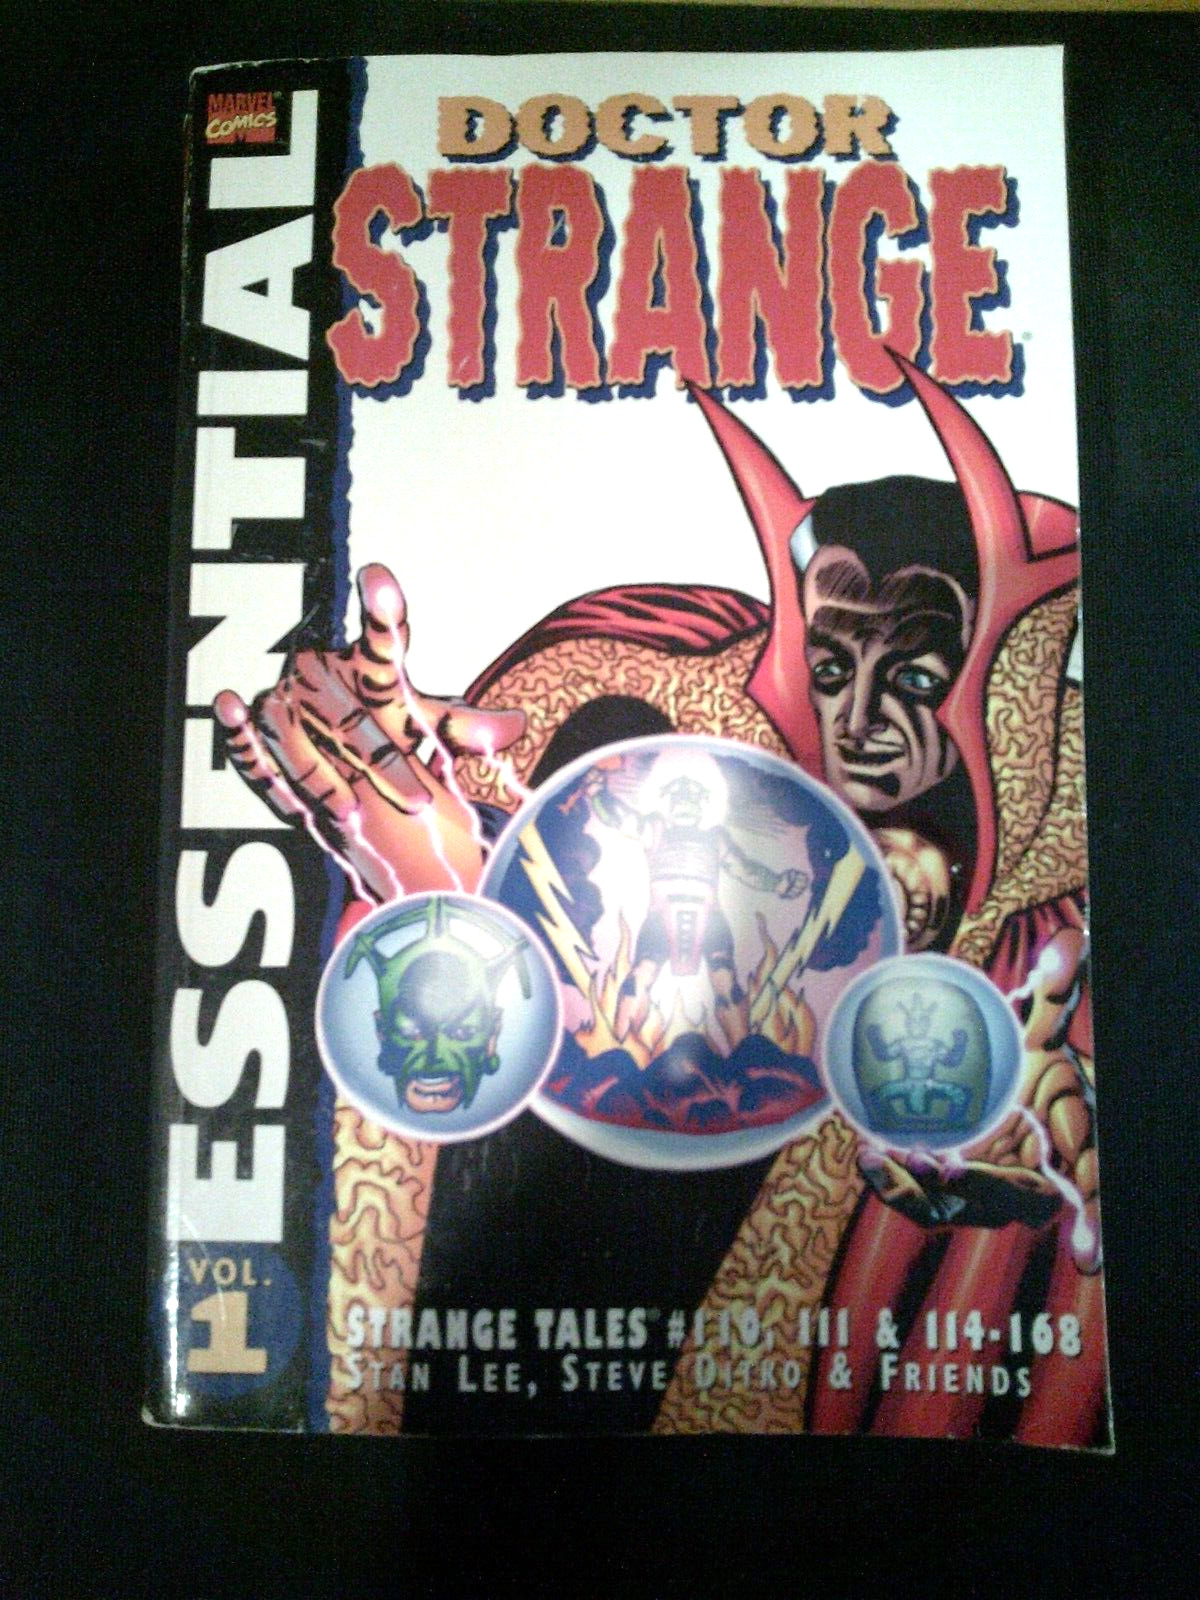 Essential Doctor Strange Volume 1 HUGE Graphic Novel